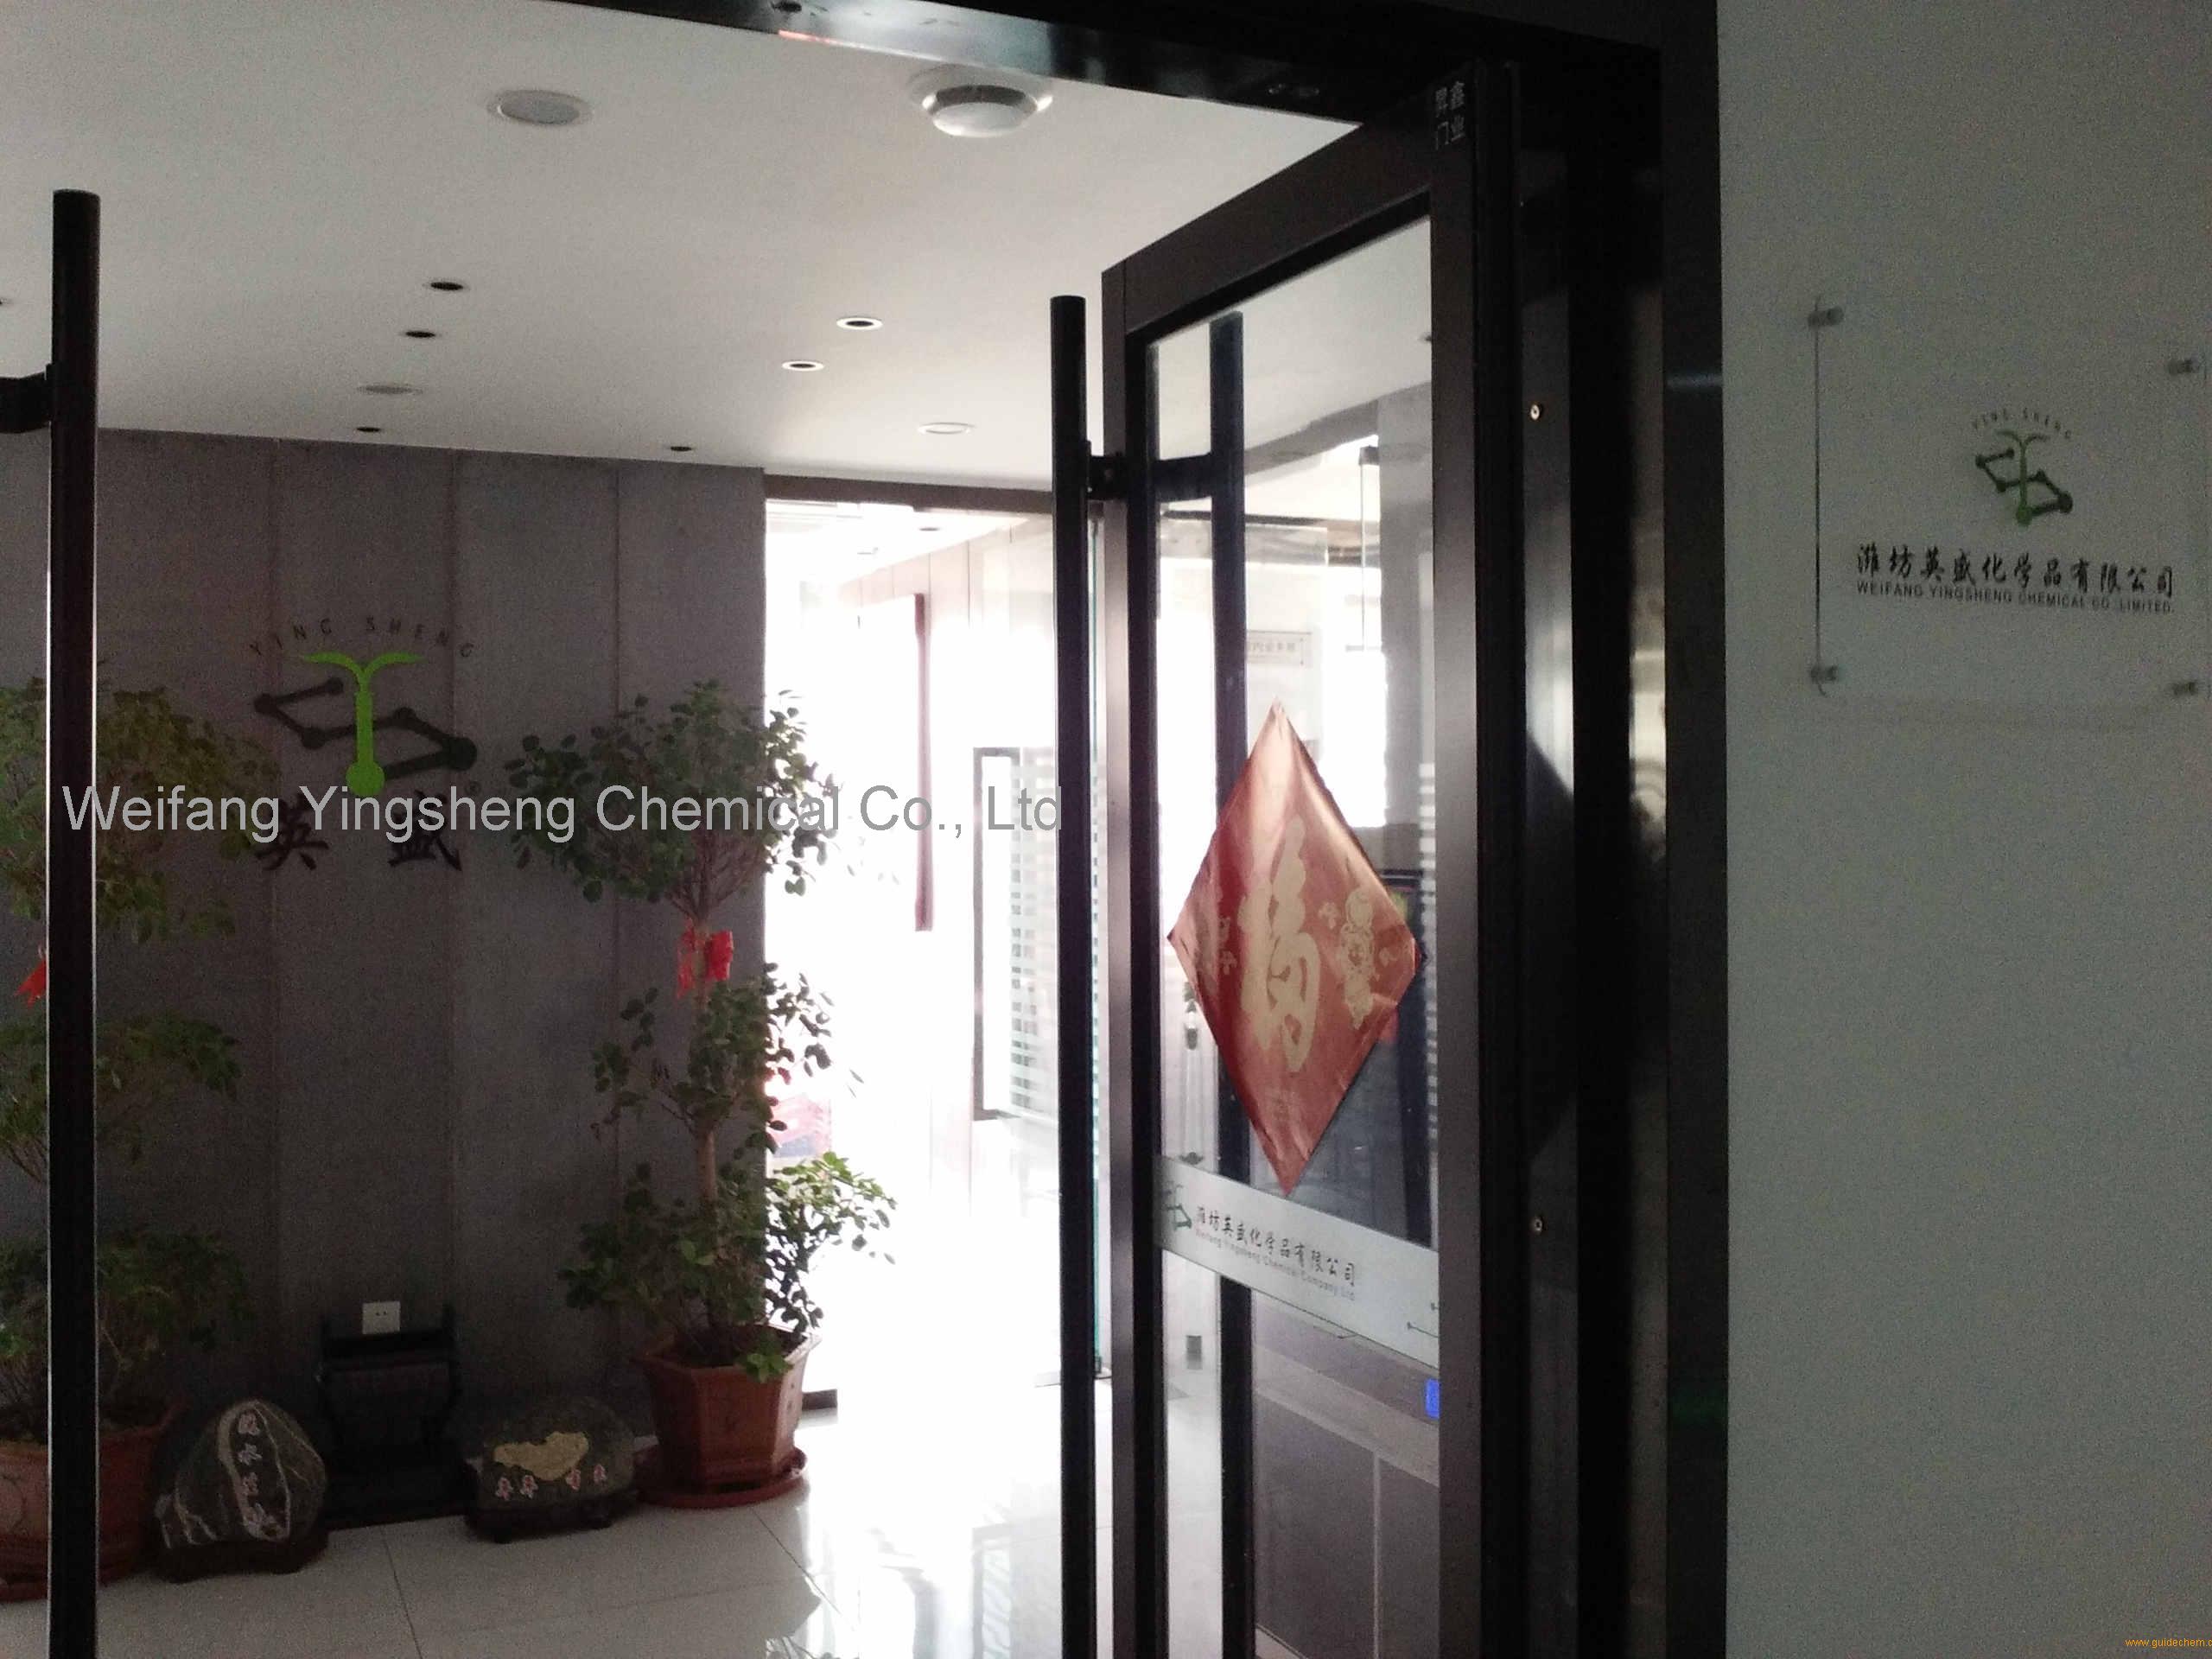 Weifang Yingsheng Chemical Co., Ltd